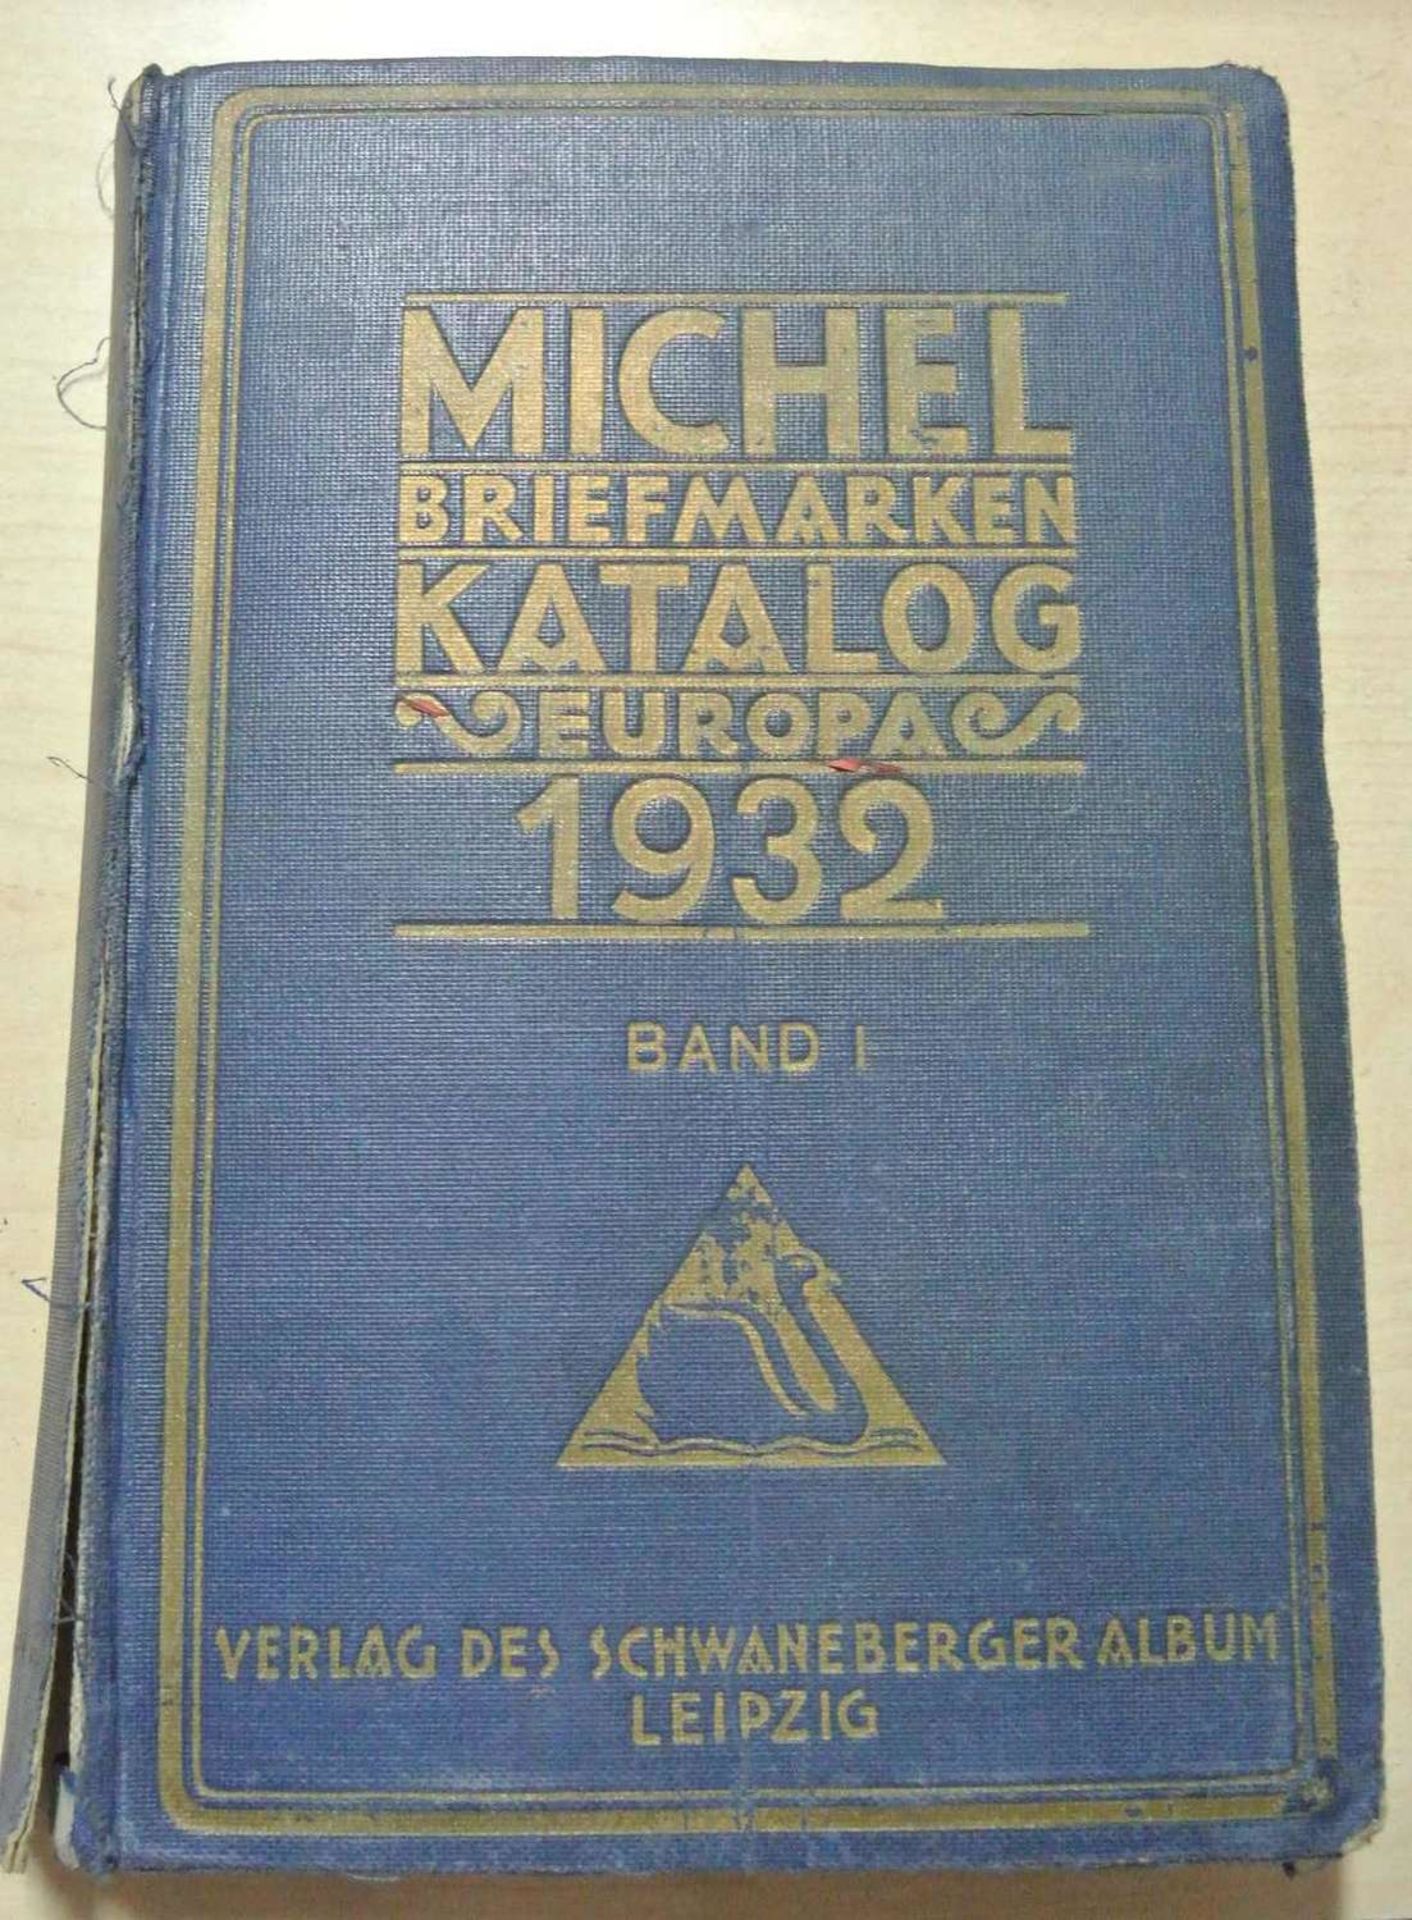 Michel Briefmarkenkatalog 1932 "Europa"